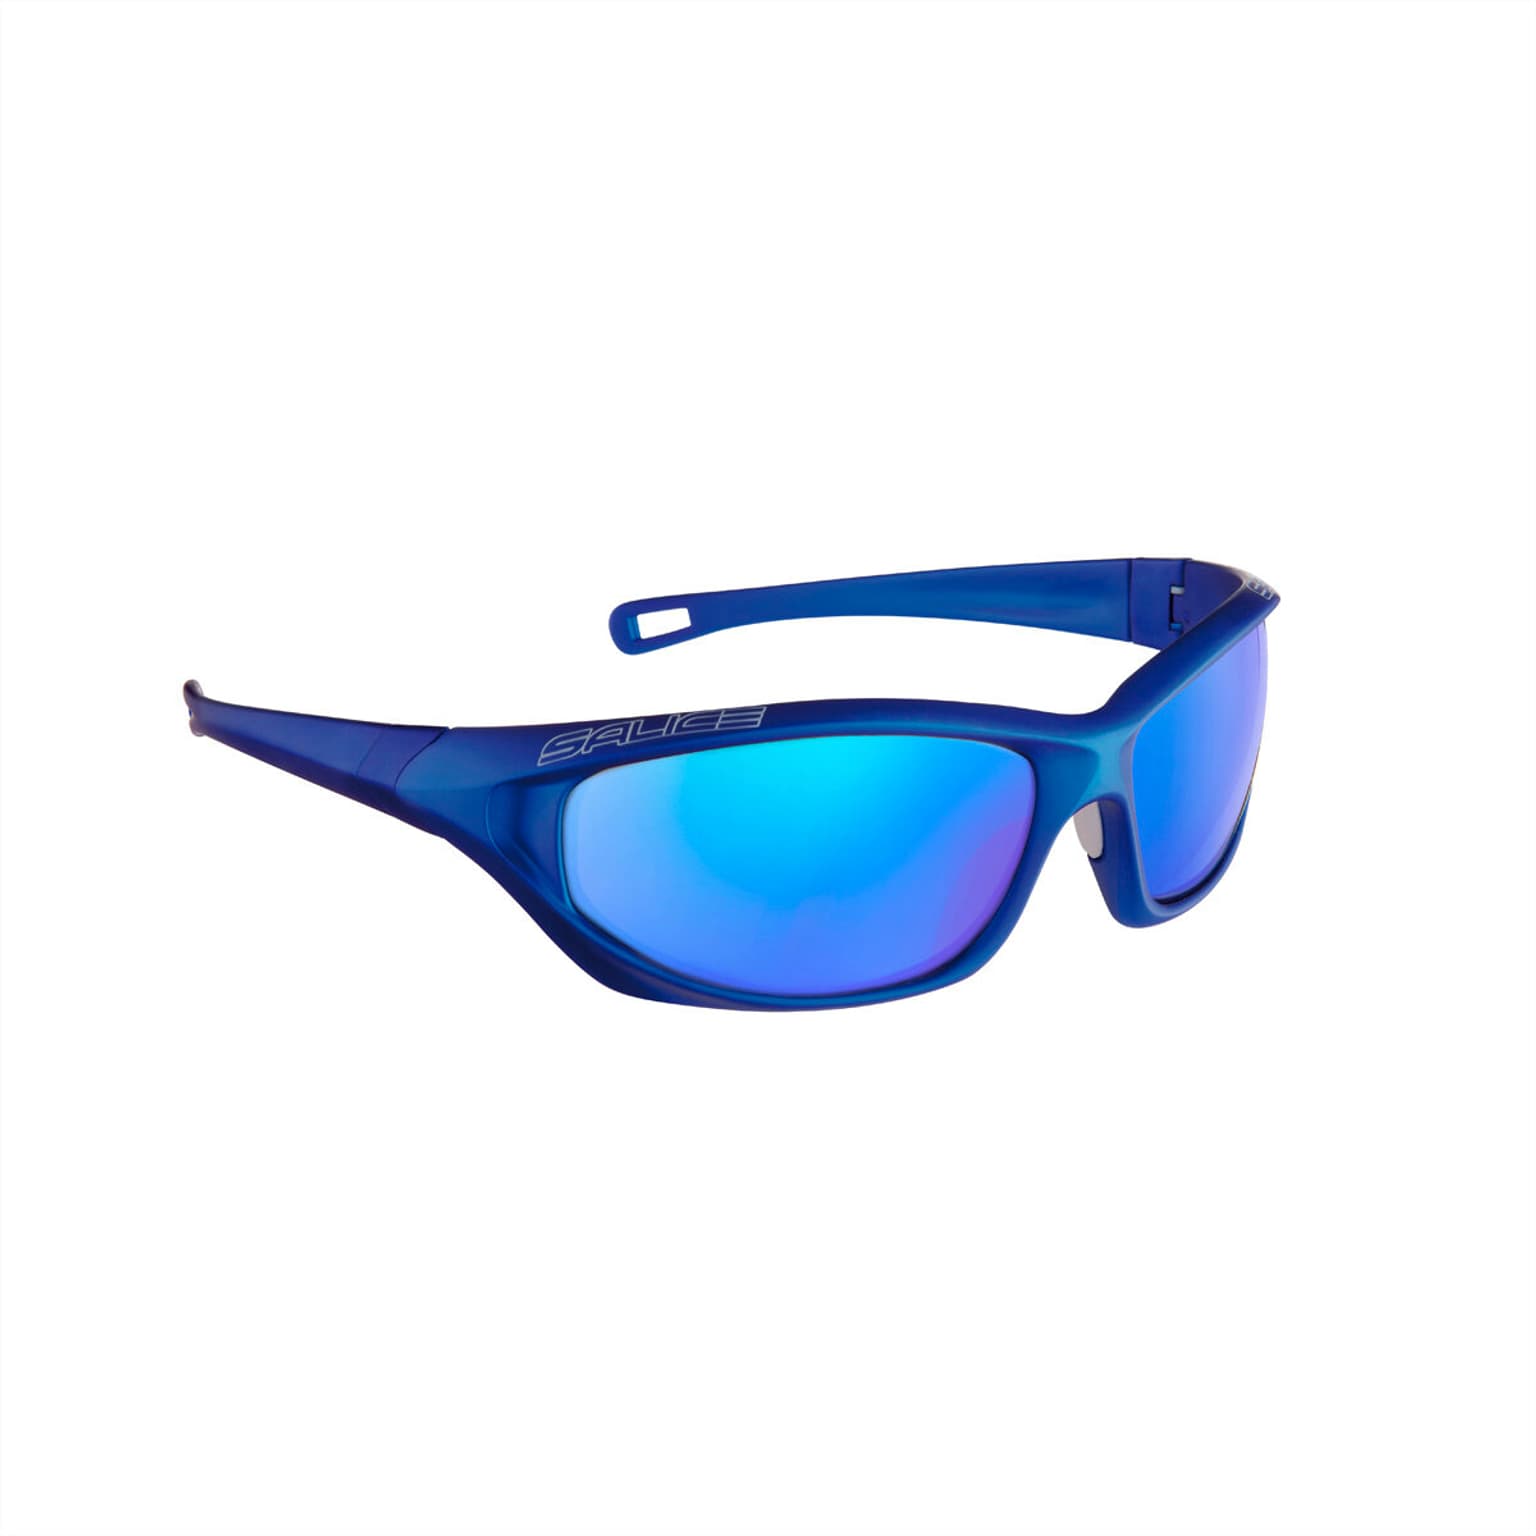 Salice Salice 342RW Sportbrille dunkelblau 1